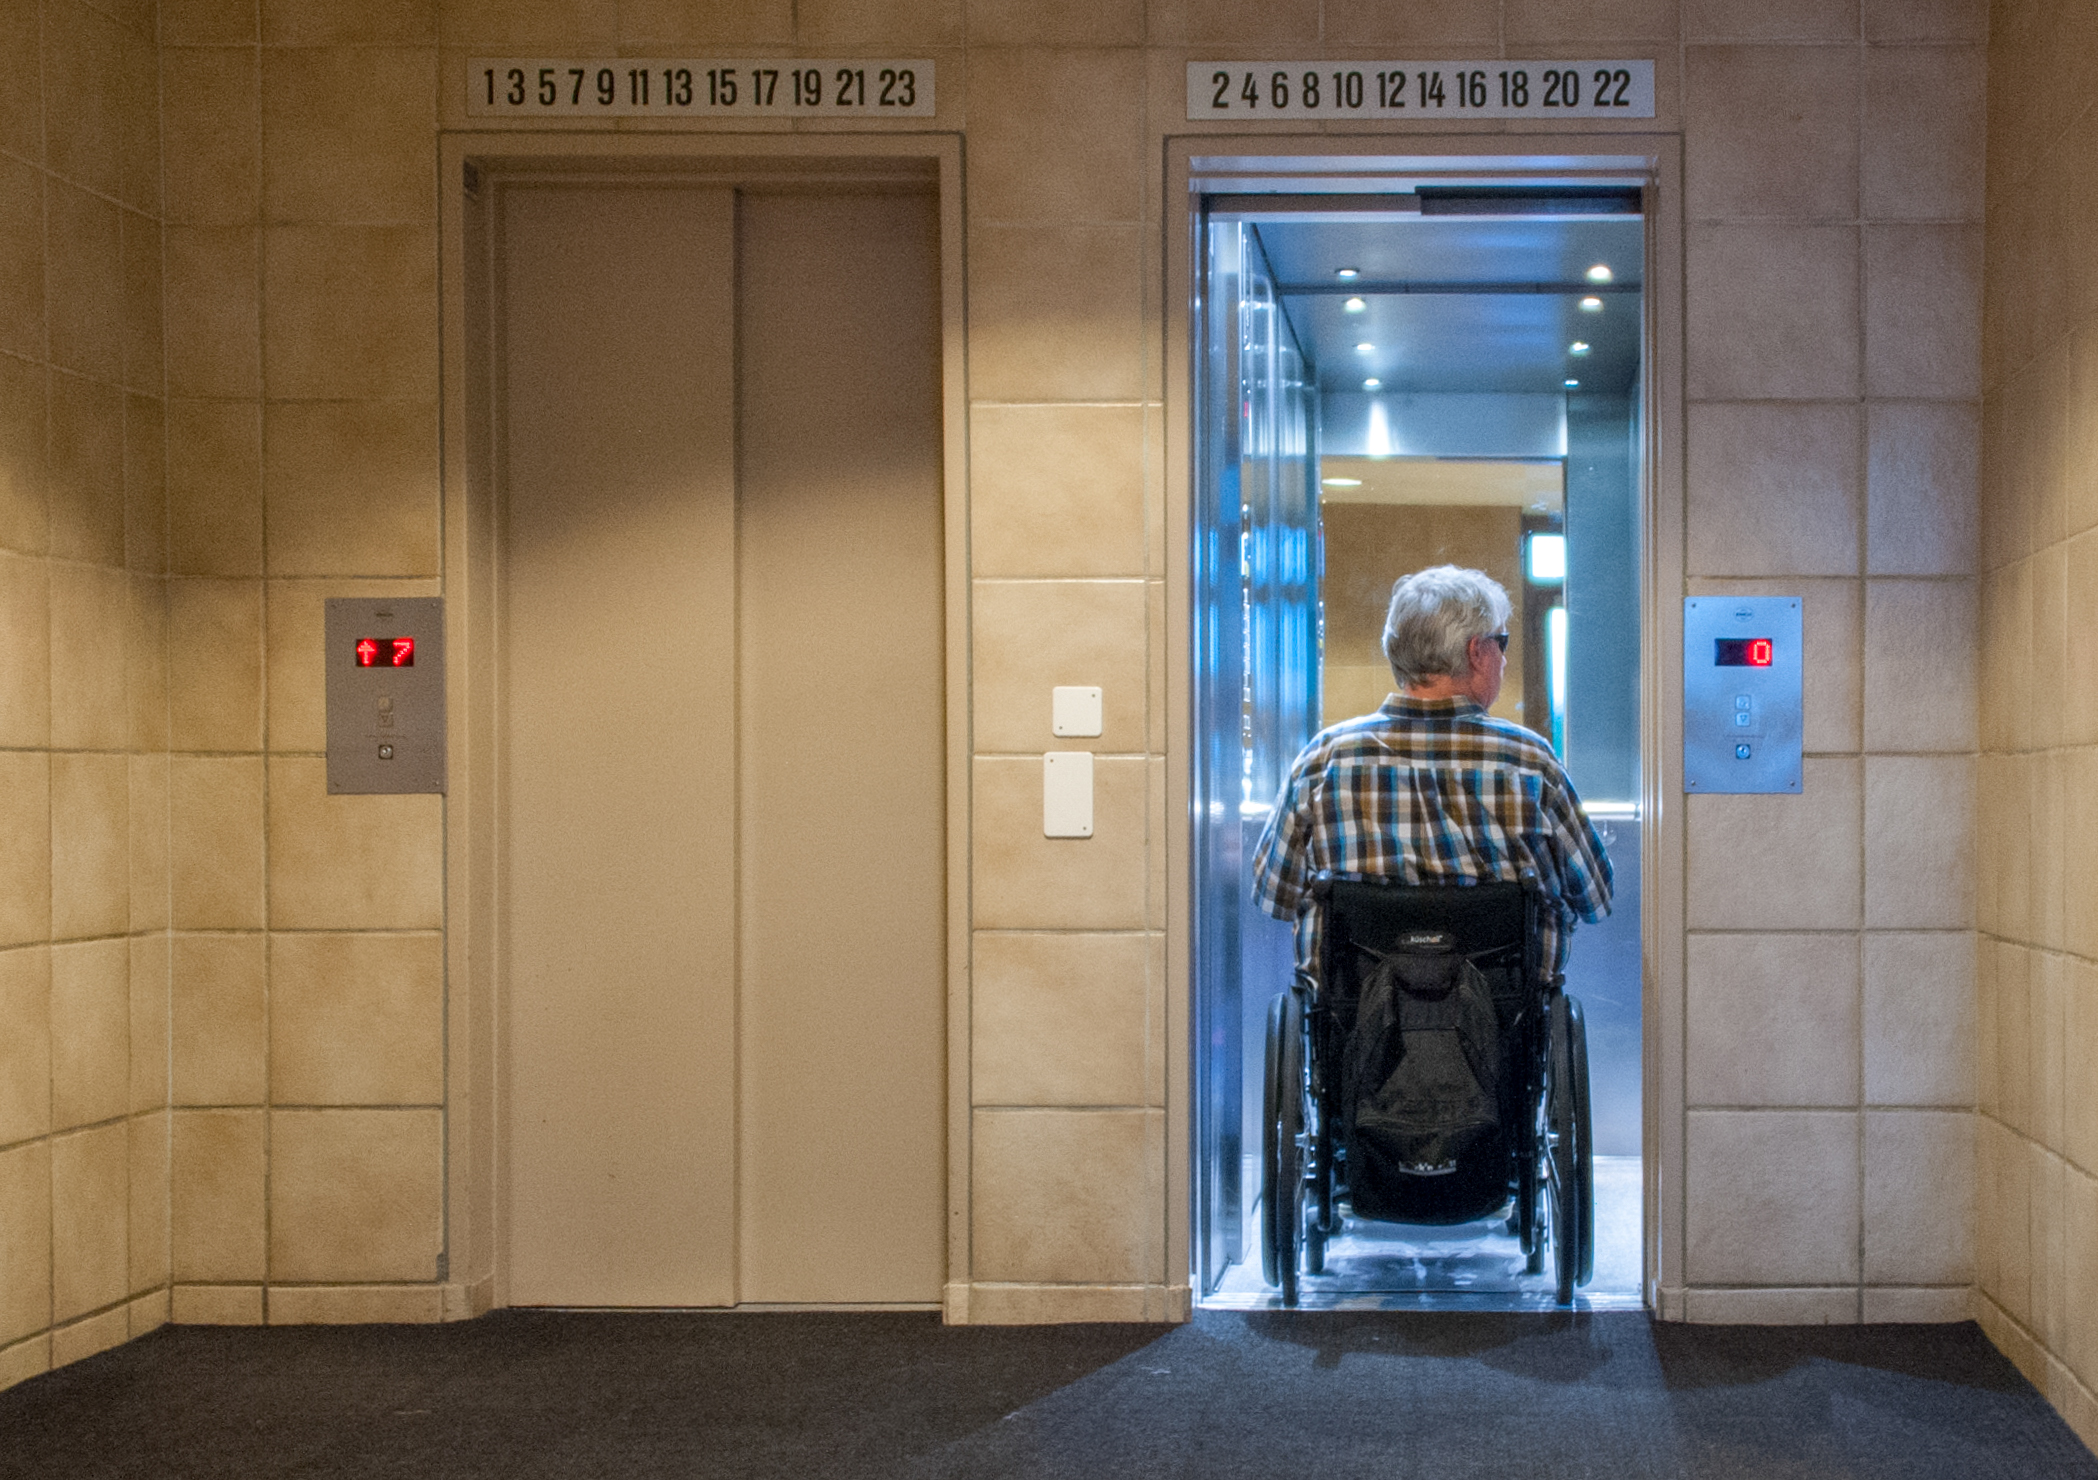 Urban Metry entra al elevador con su silla de ruedas